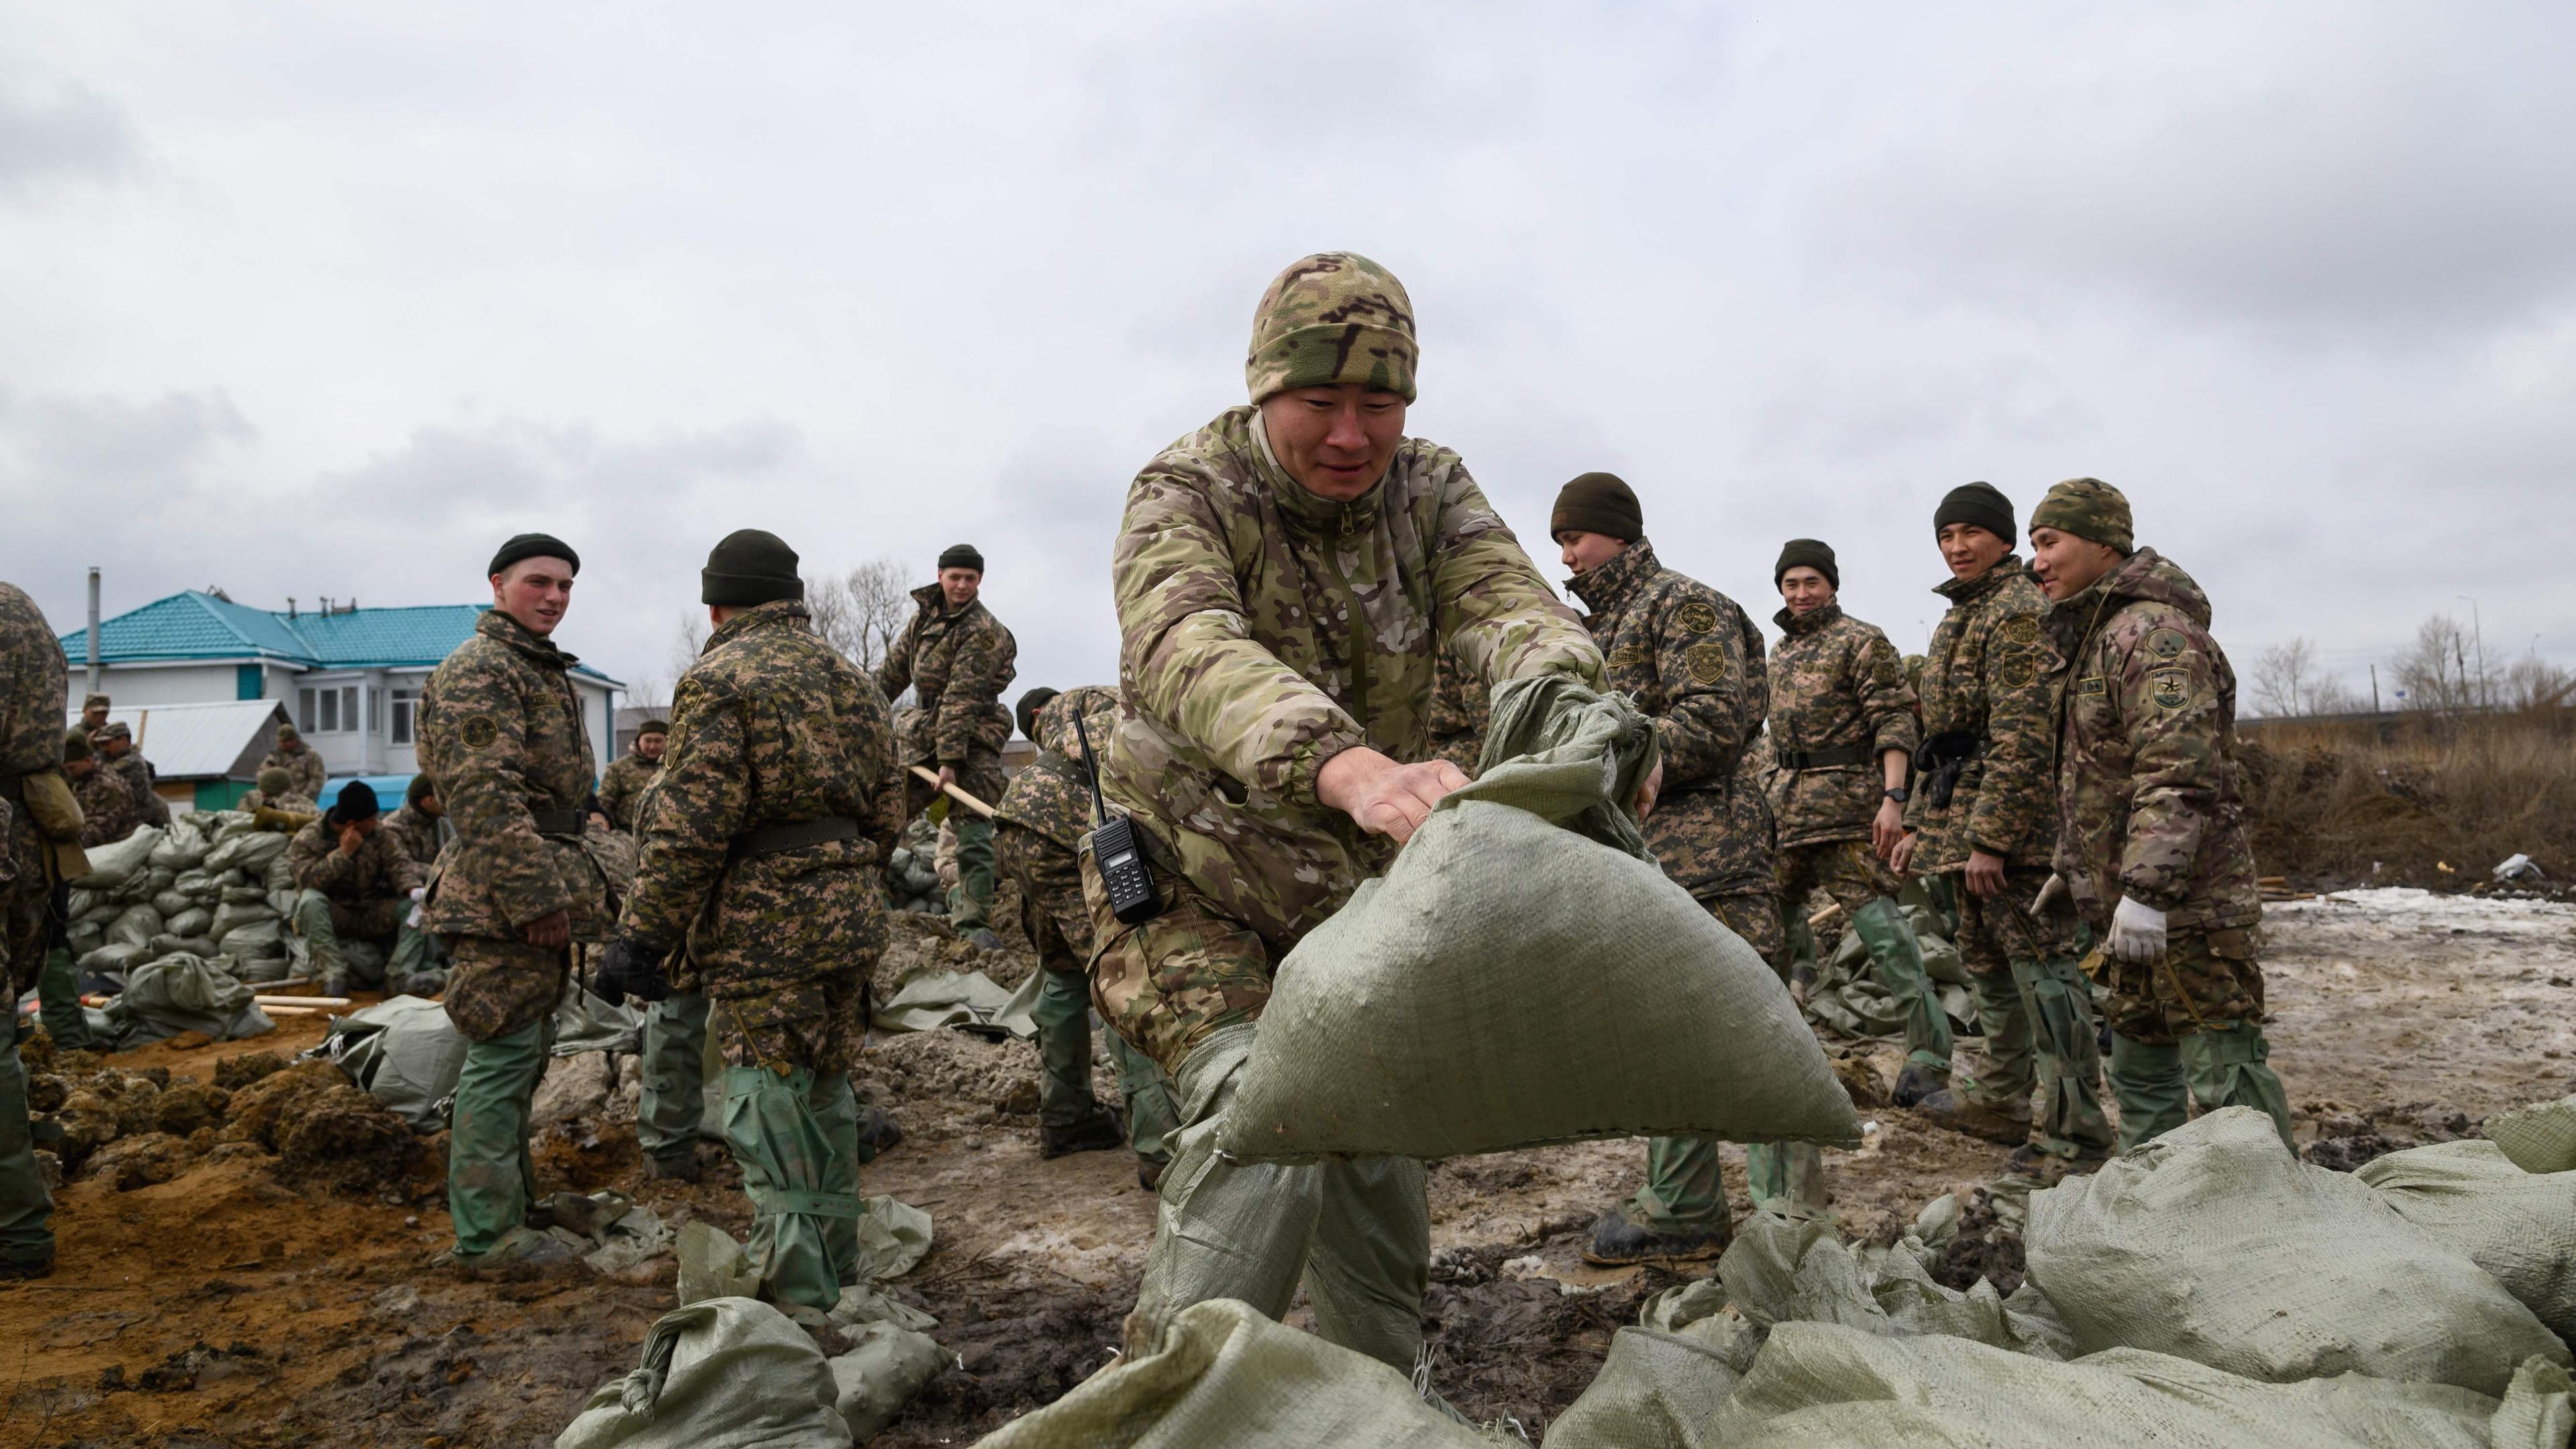 Arbeiter und Soldaten errichten Hochwassersperren in der Siedlung Zarechny am Rande der Stadt Petropavl im Norden Kasachstans, nahe der Grenze zu Russland.